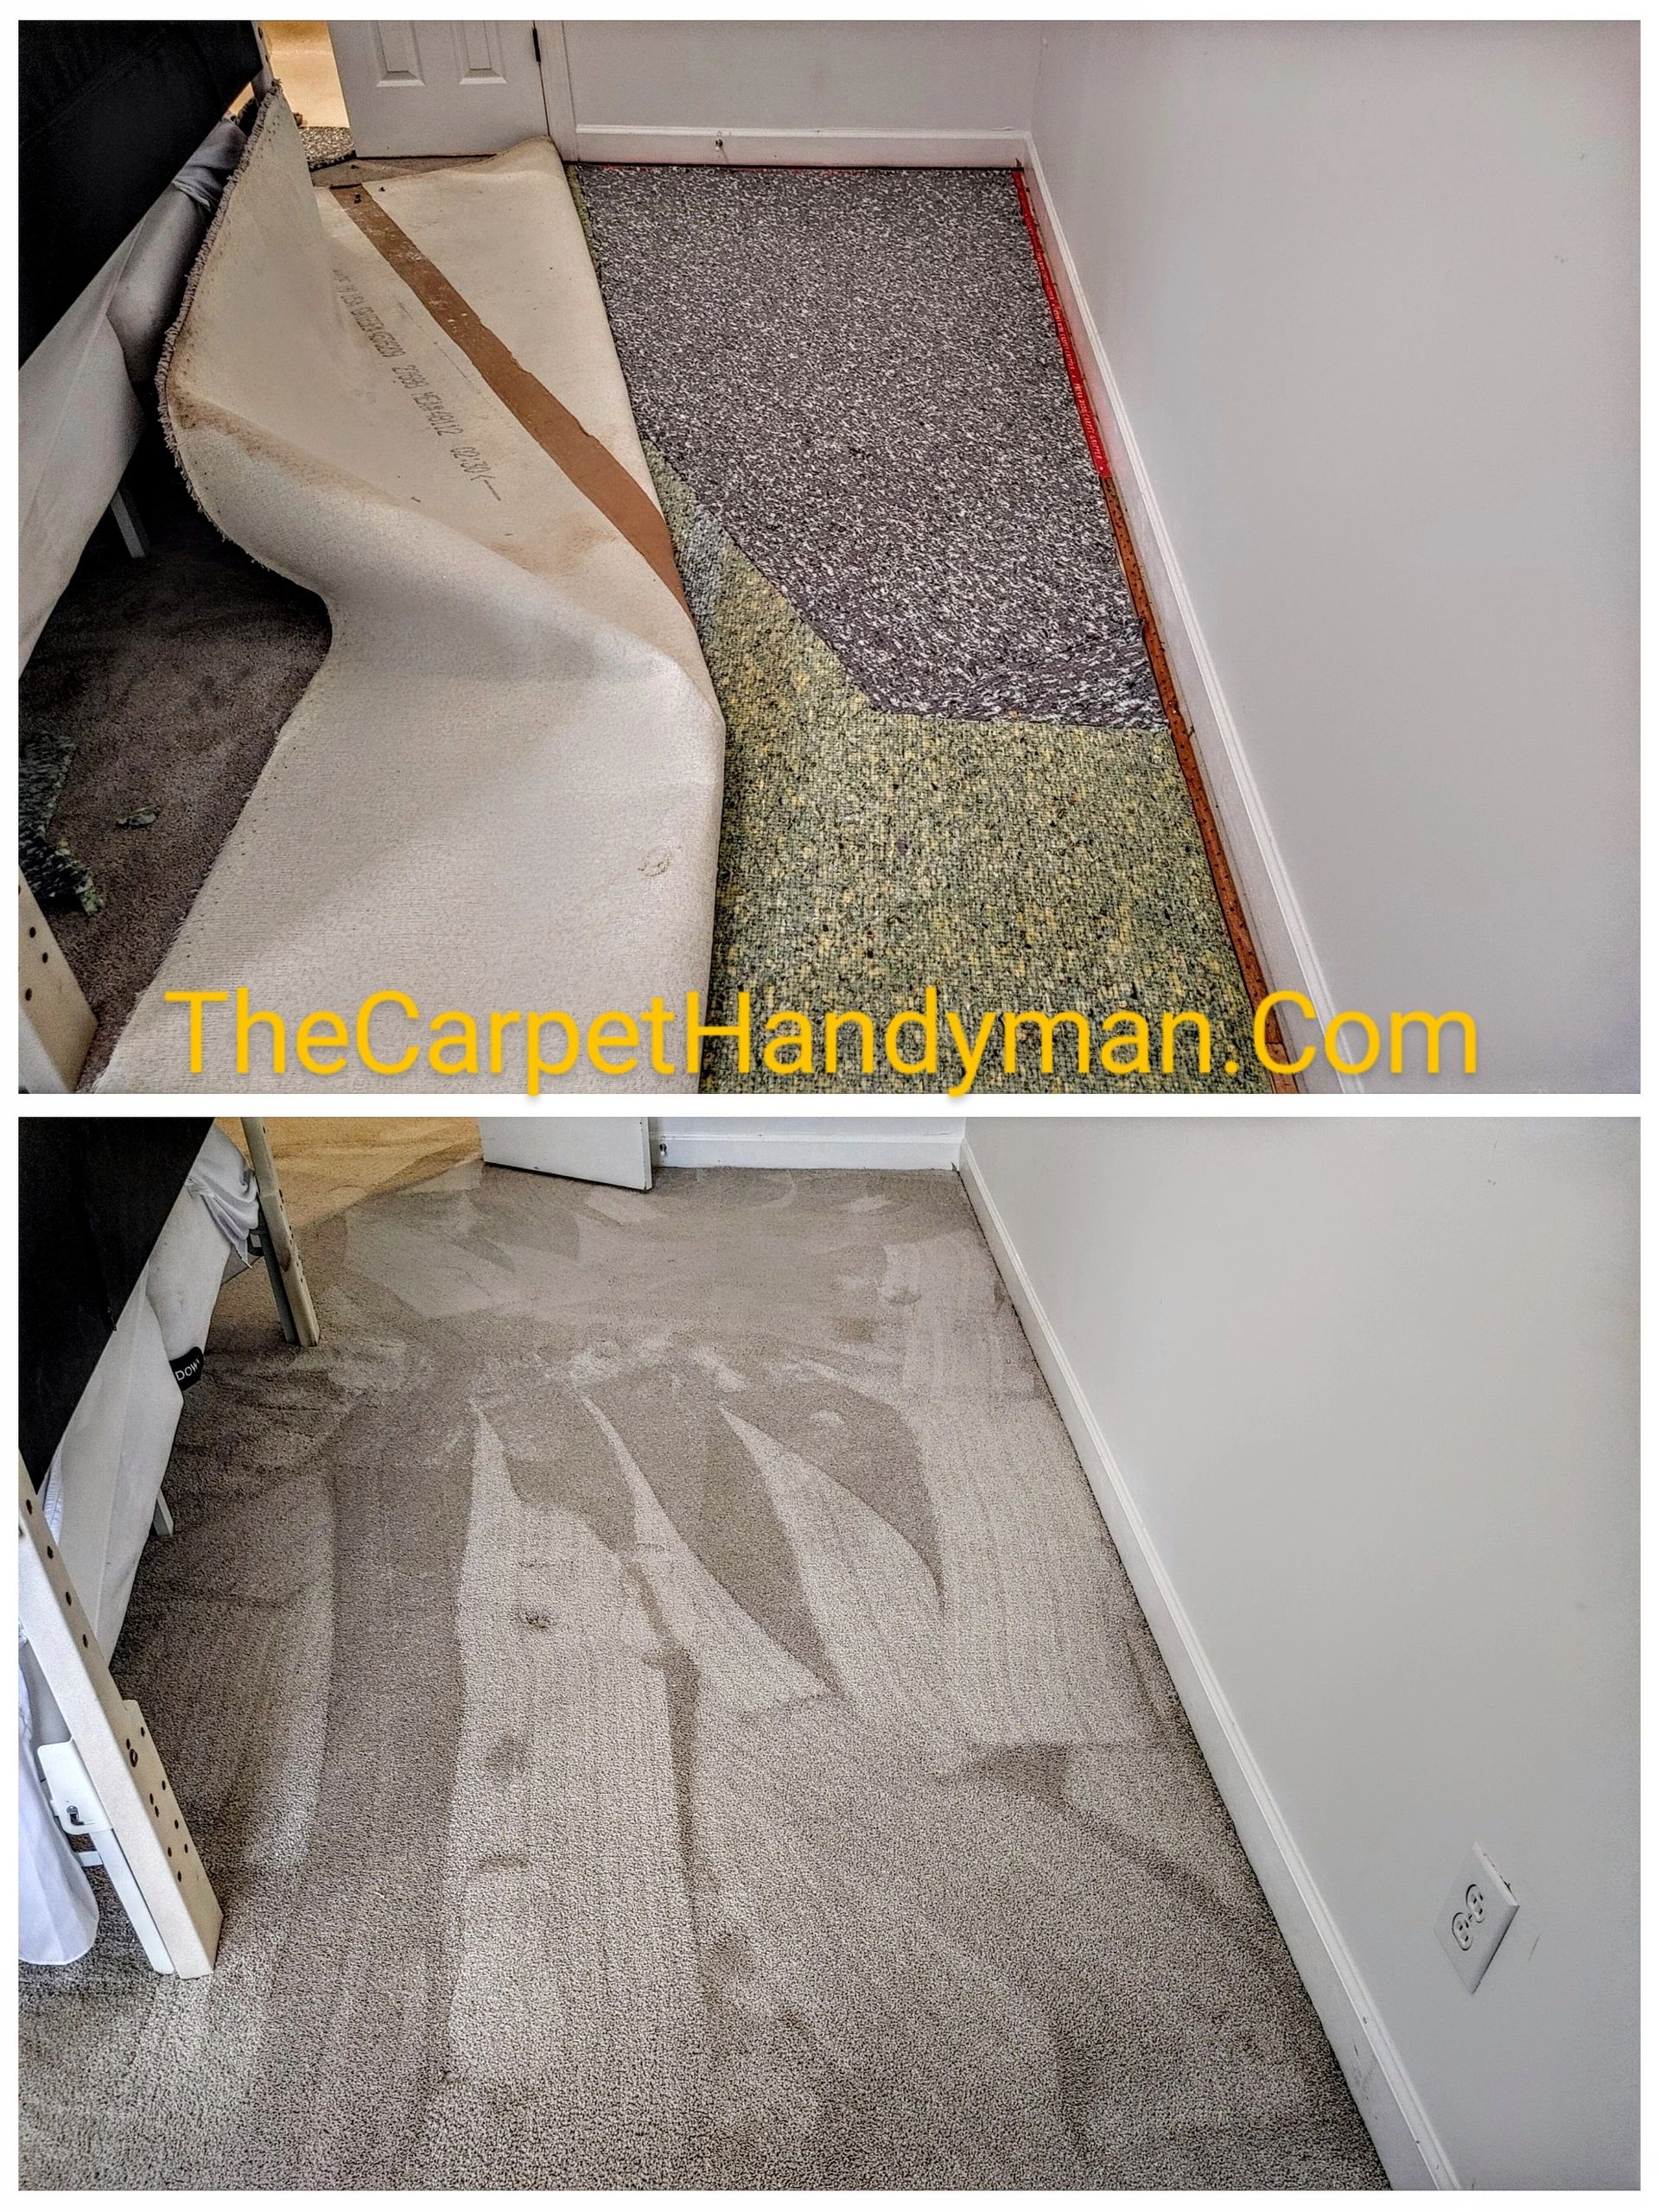 Carpet Repair: Repair or replace? - Carpet Renovations